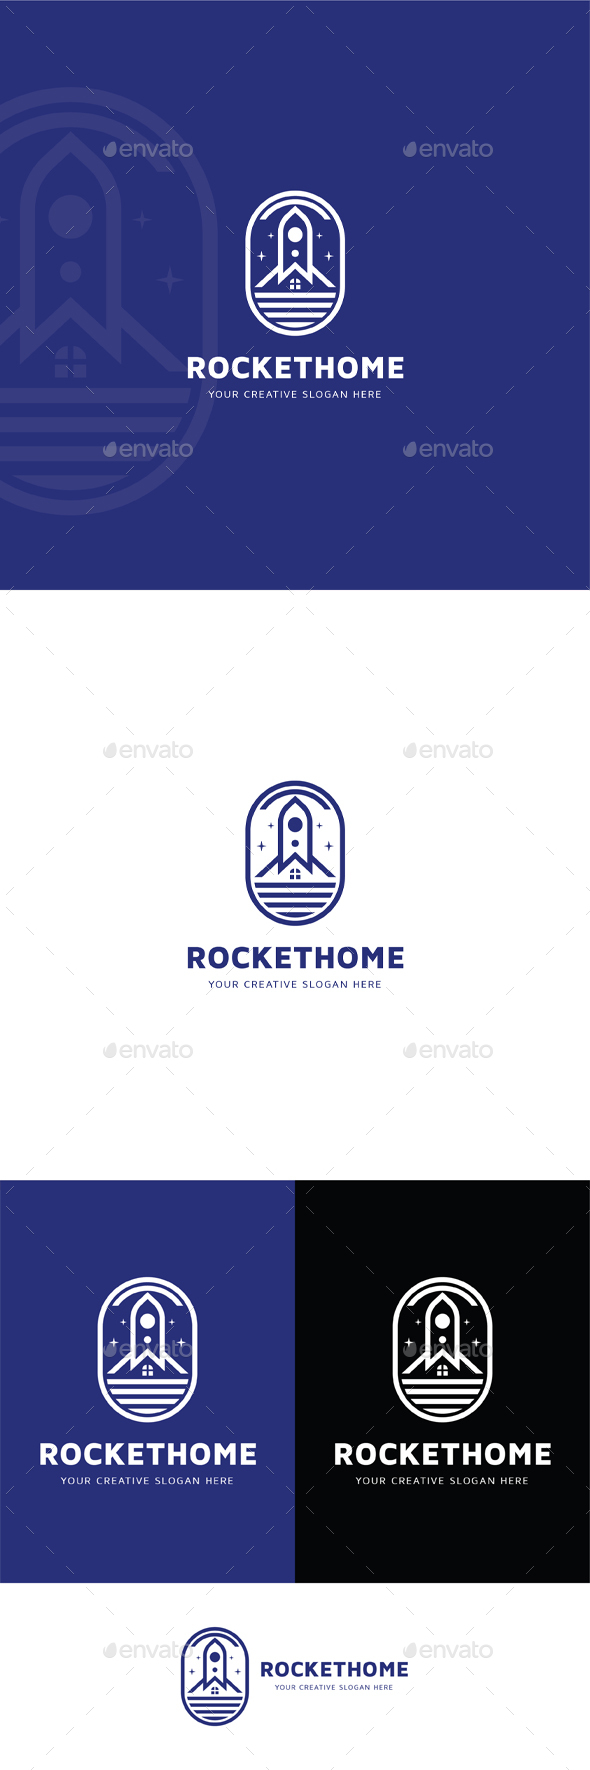 [DOWNLOAD]Rocket Home Logo